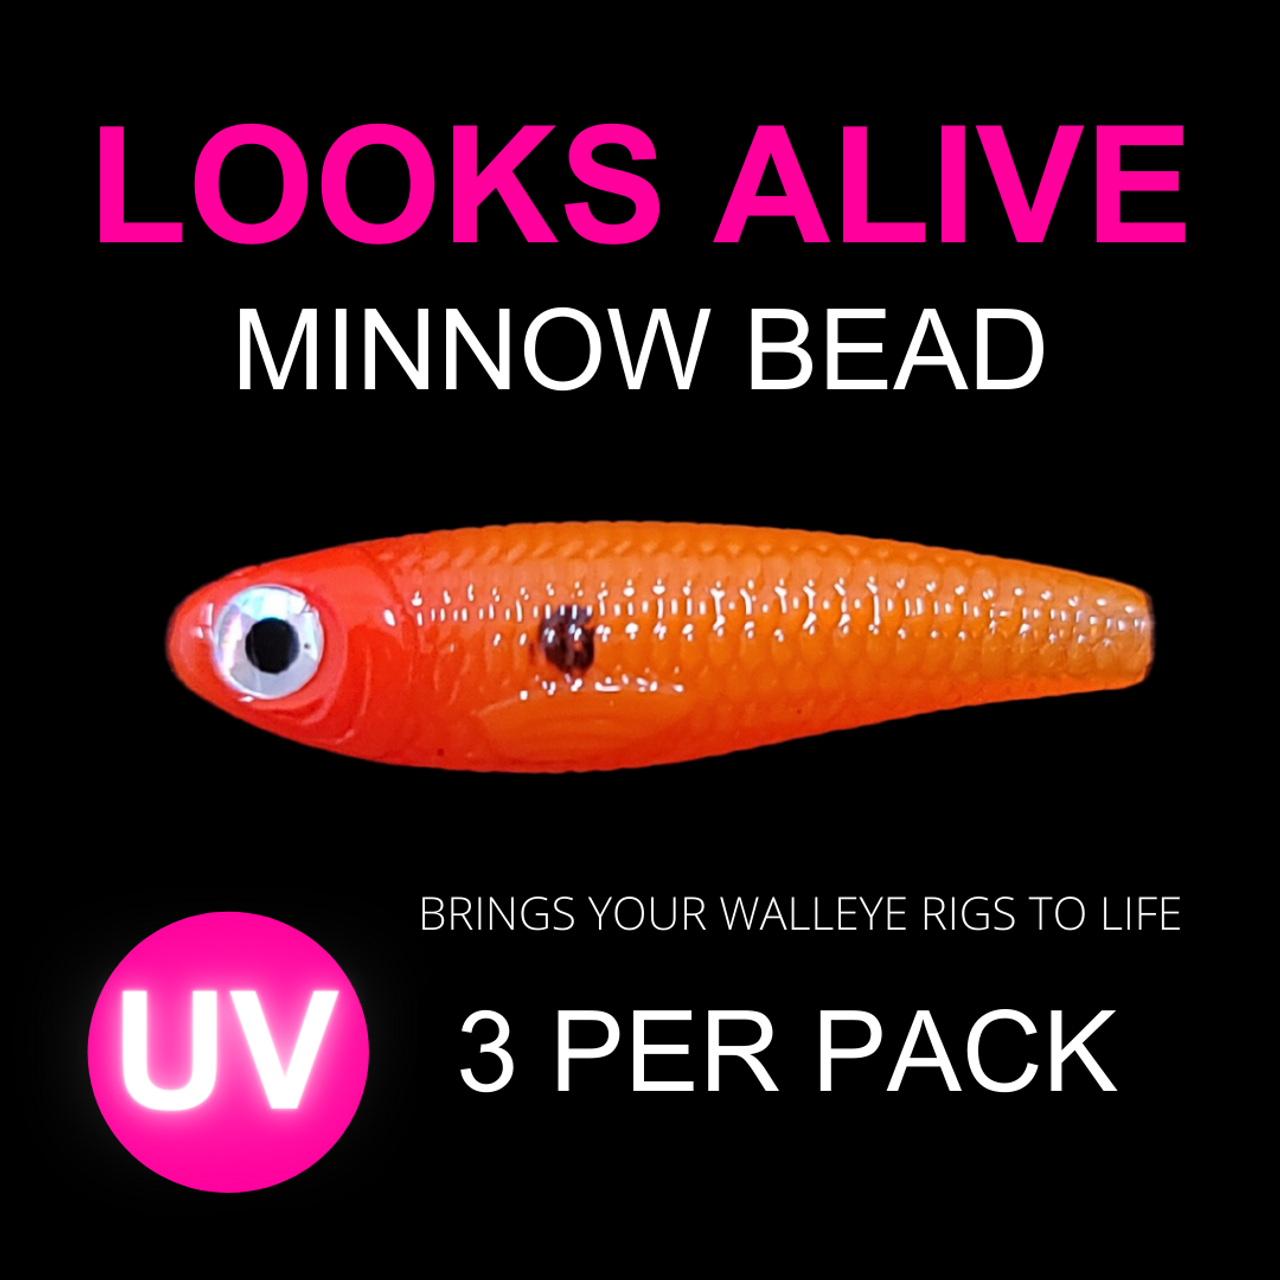 Looks Alive Minnow Beads UV TANGERINE SHAD 